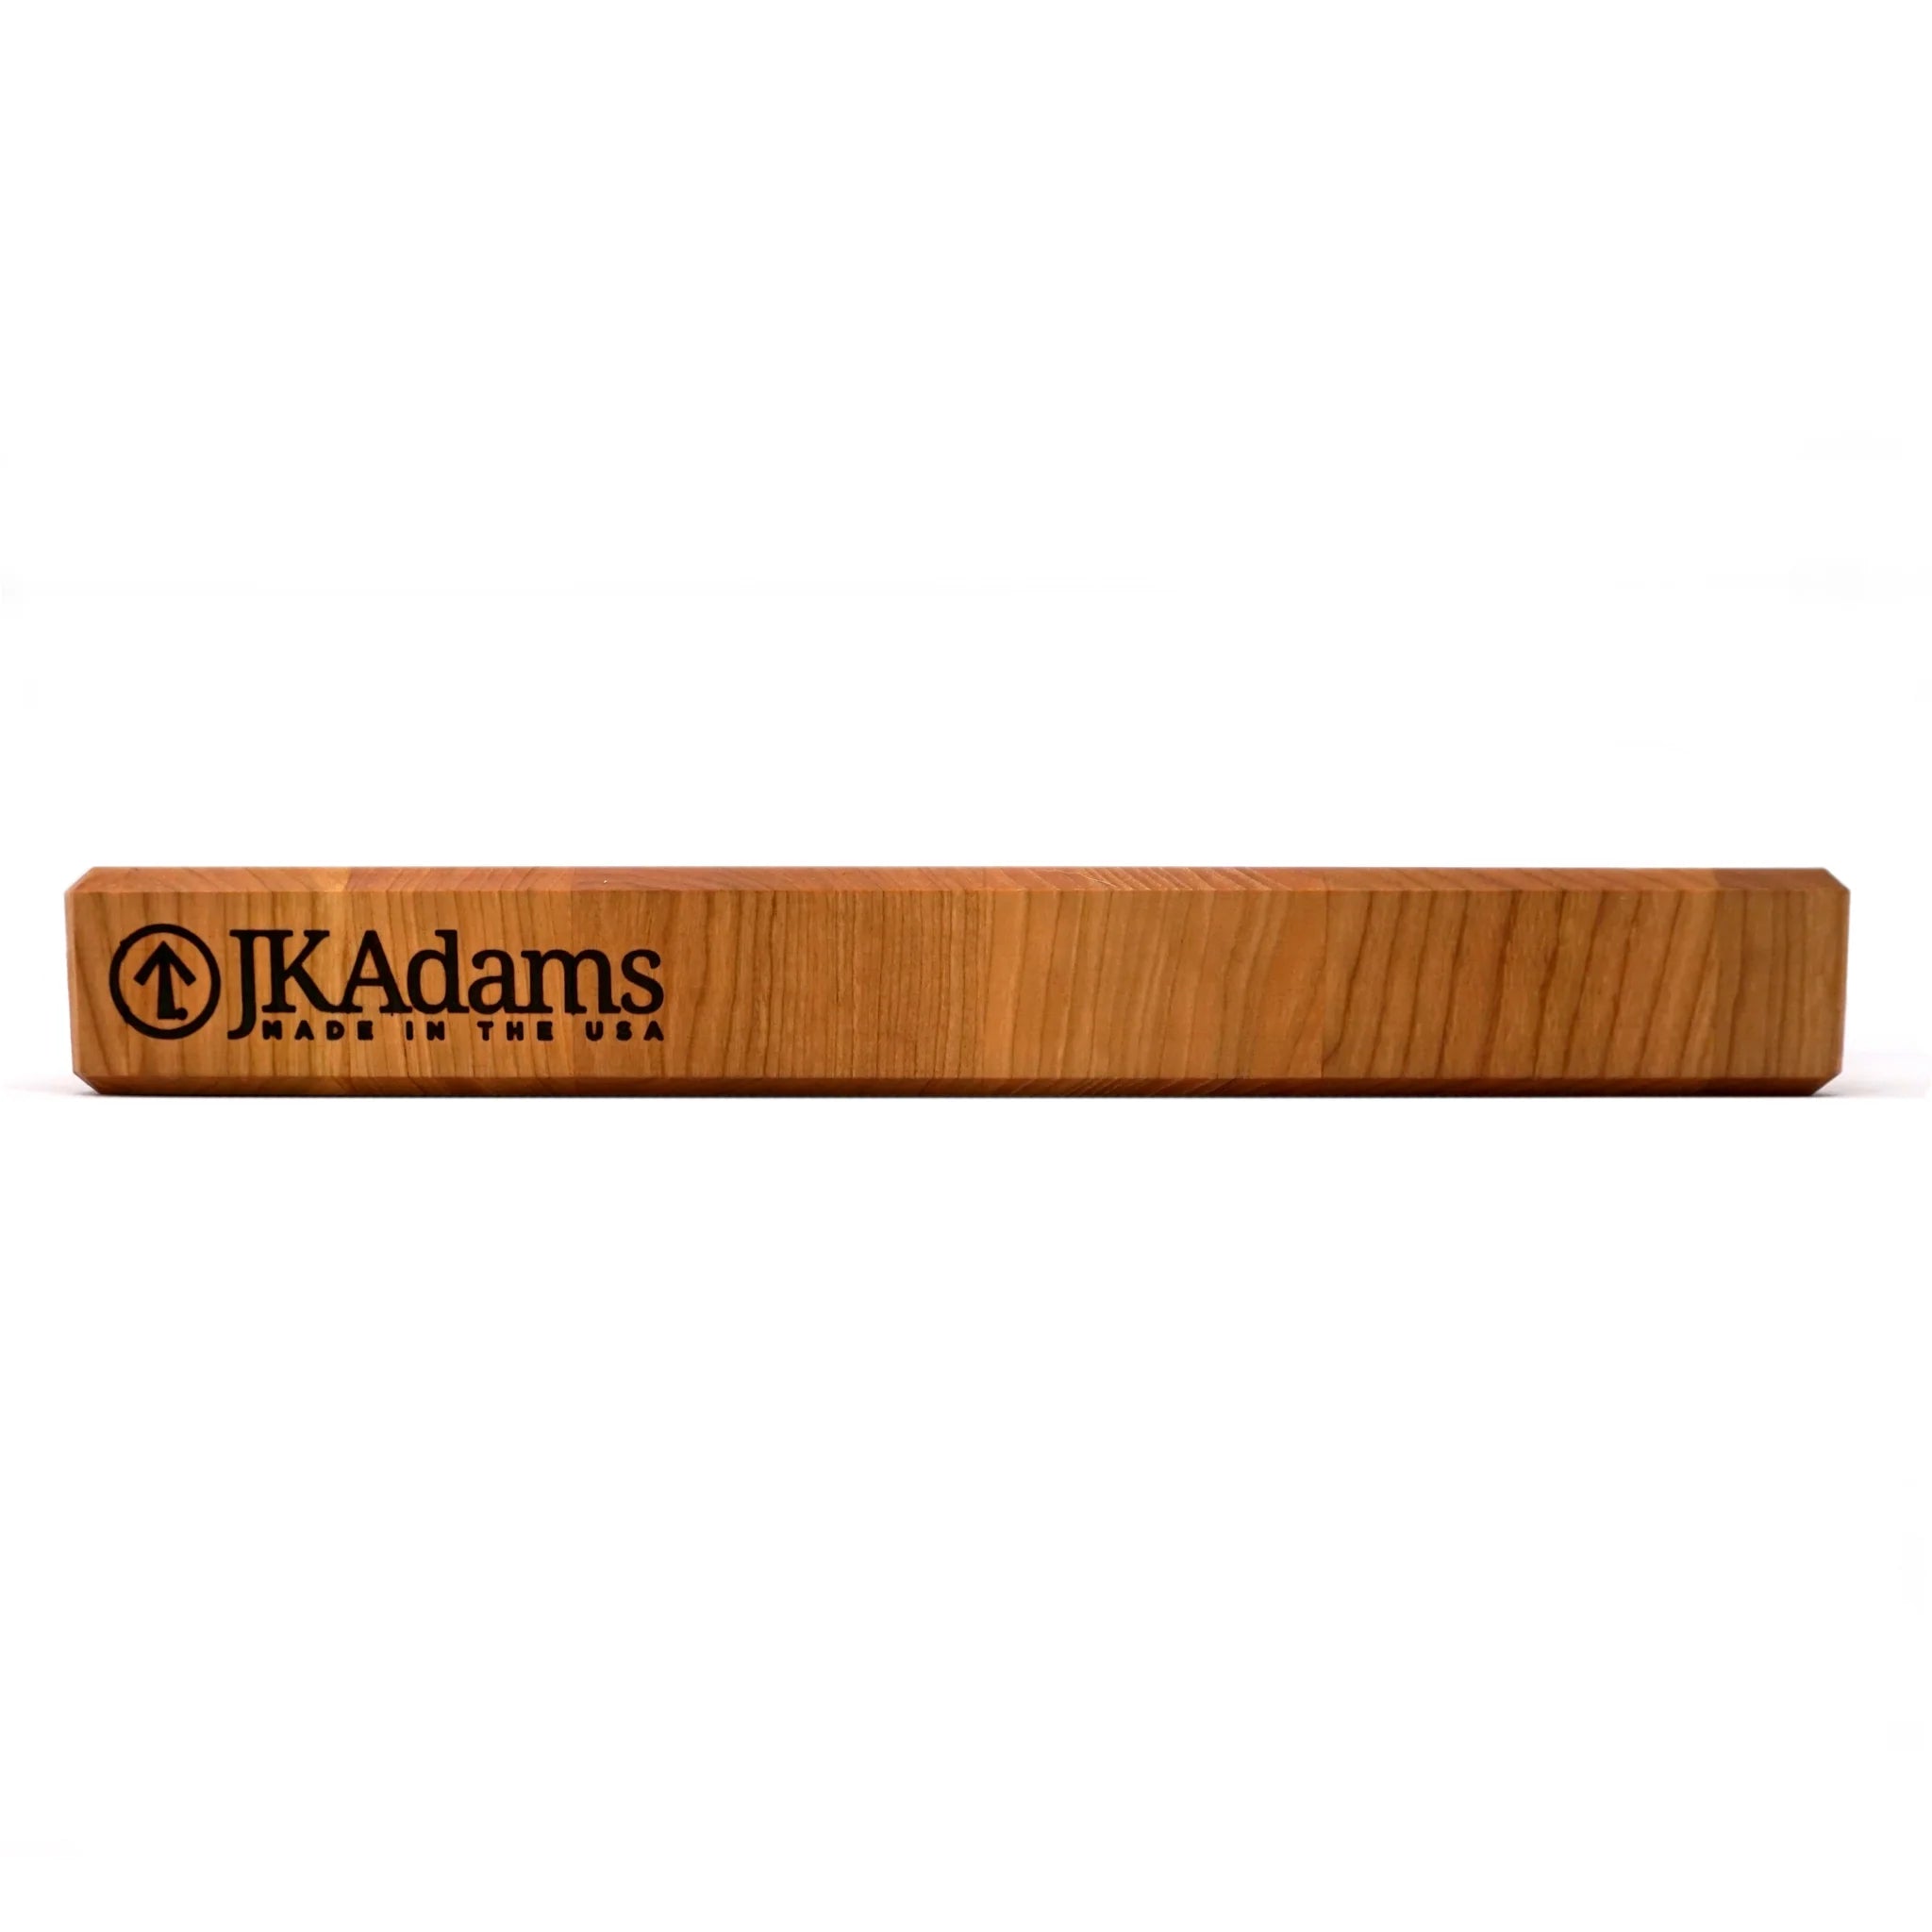 JK Adams Professional End Grain Cherry Board, Multiple Sizes